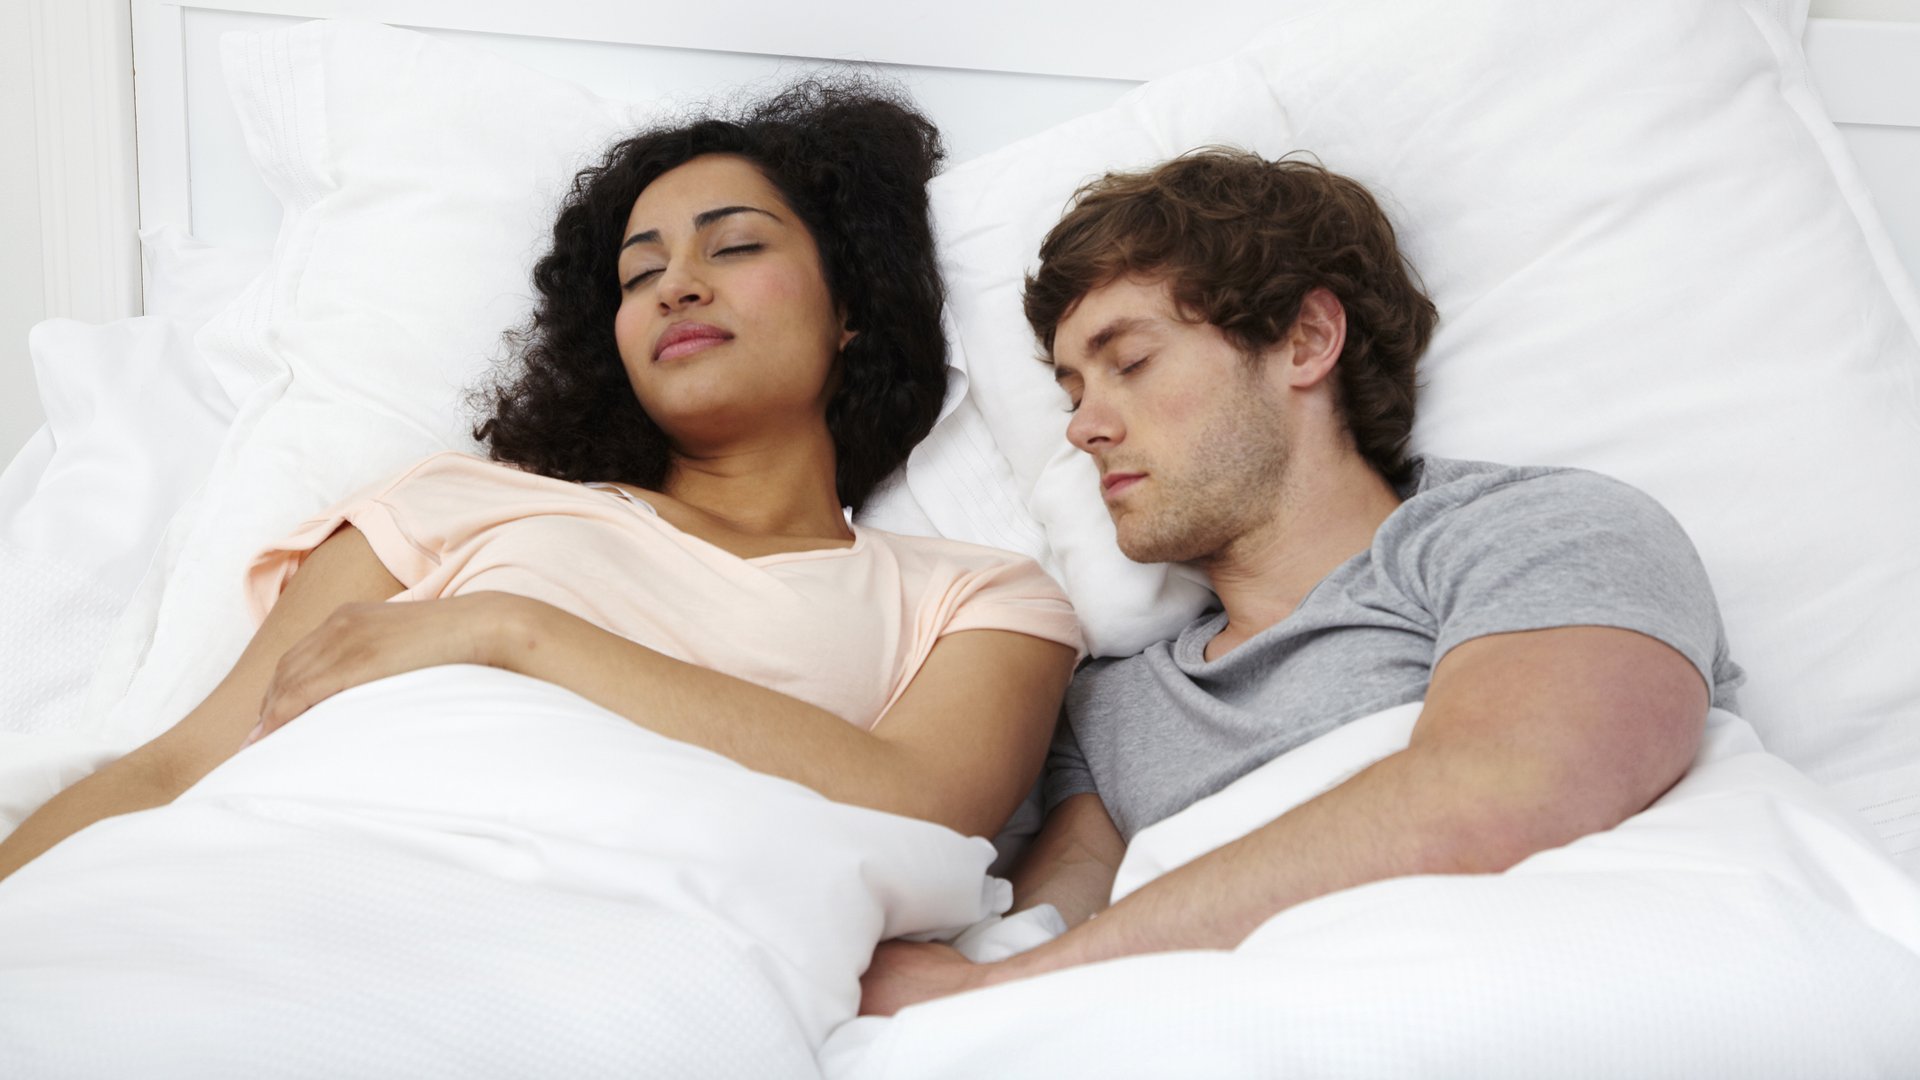 Las imágenes muestran a una pareja durmiendo juntos en la cama, descansando sobre almohadas blancas.